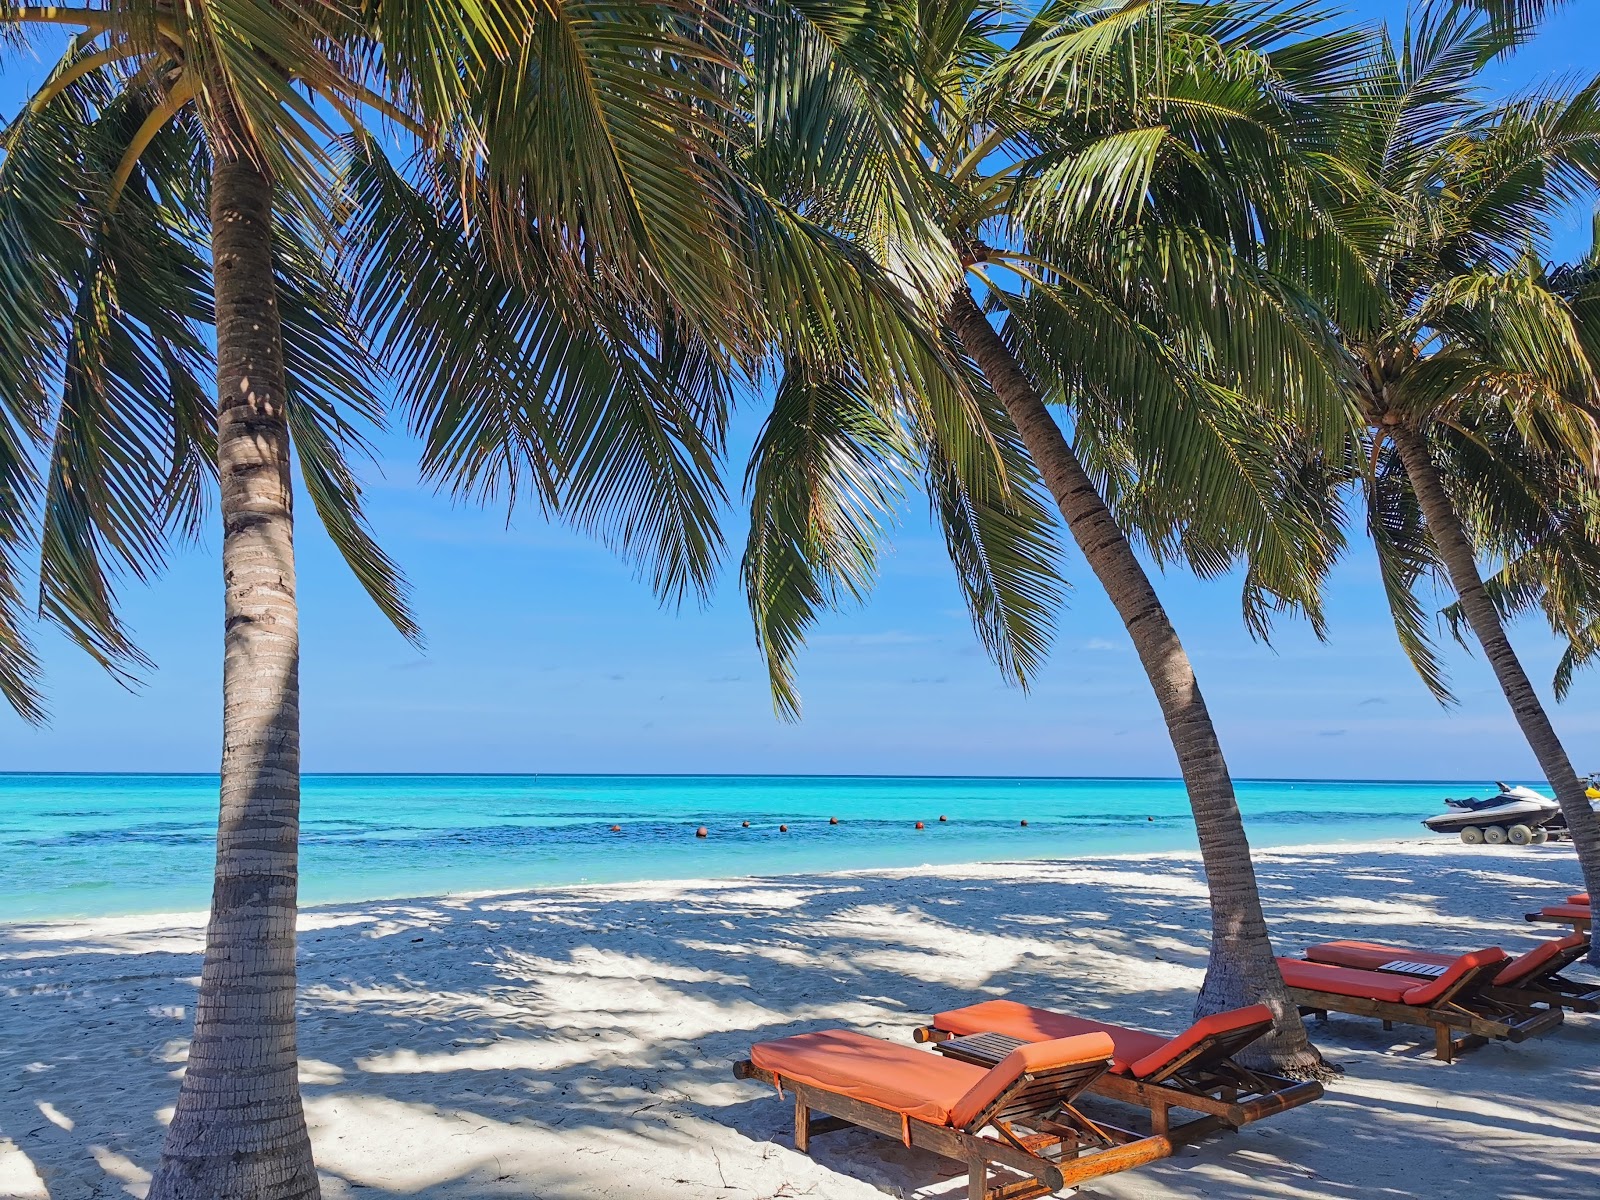 Club Med Kani island'in fotoğrafı geniş plaj ile birlikte